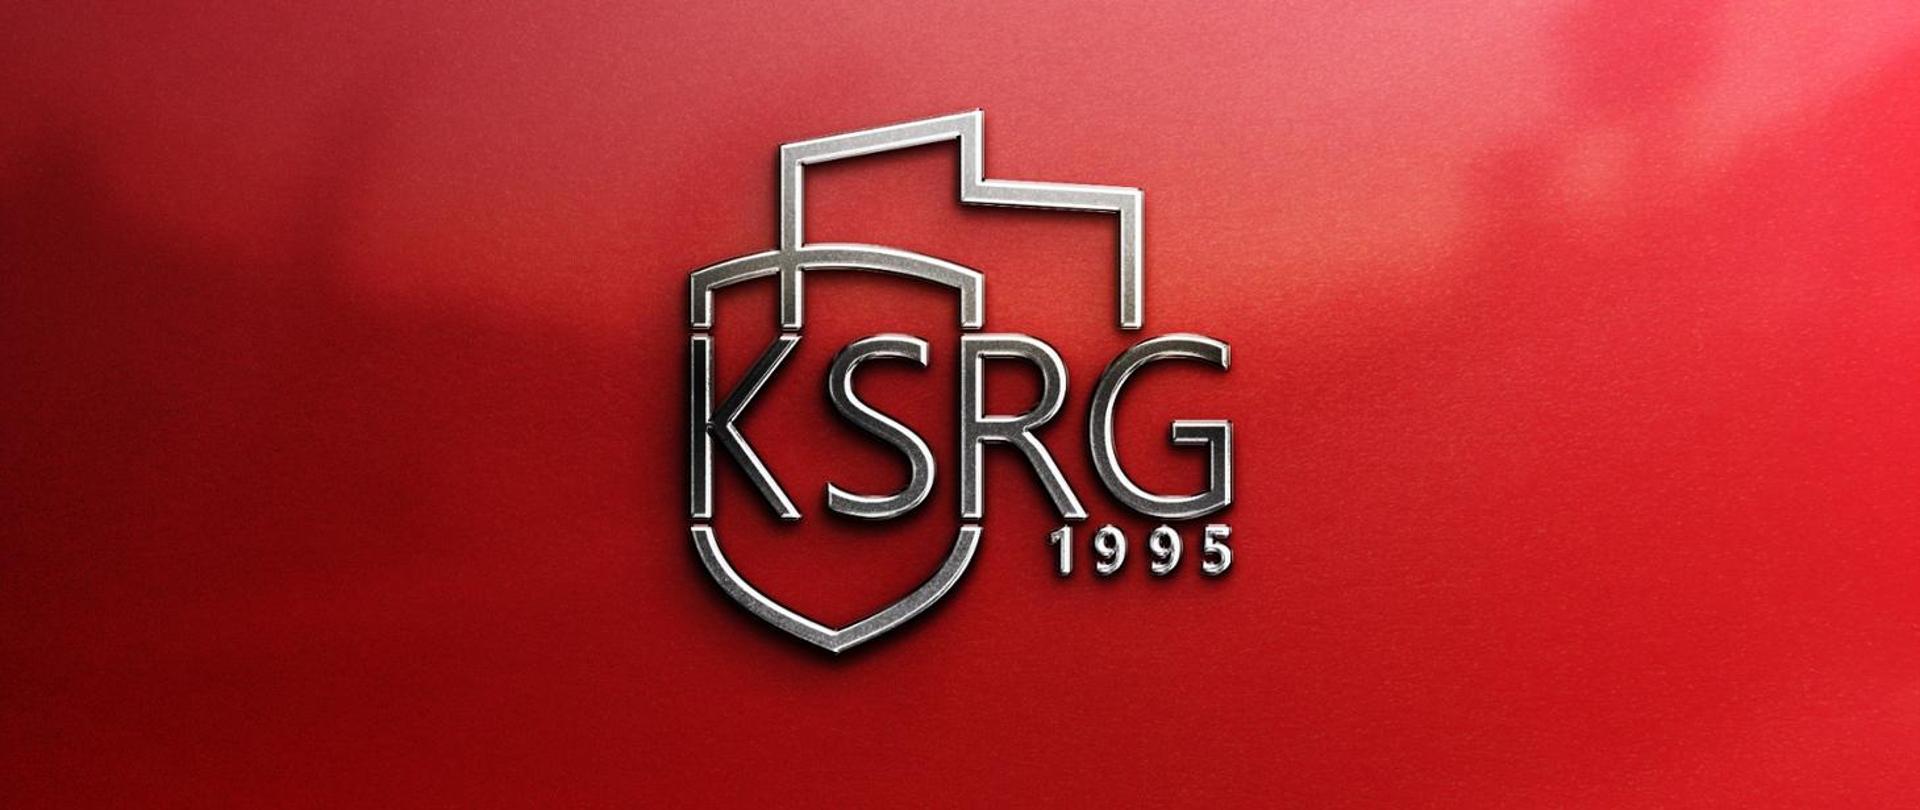 KSRG 1995 Logo